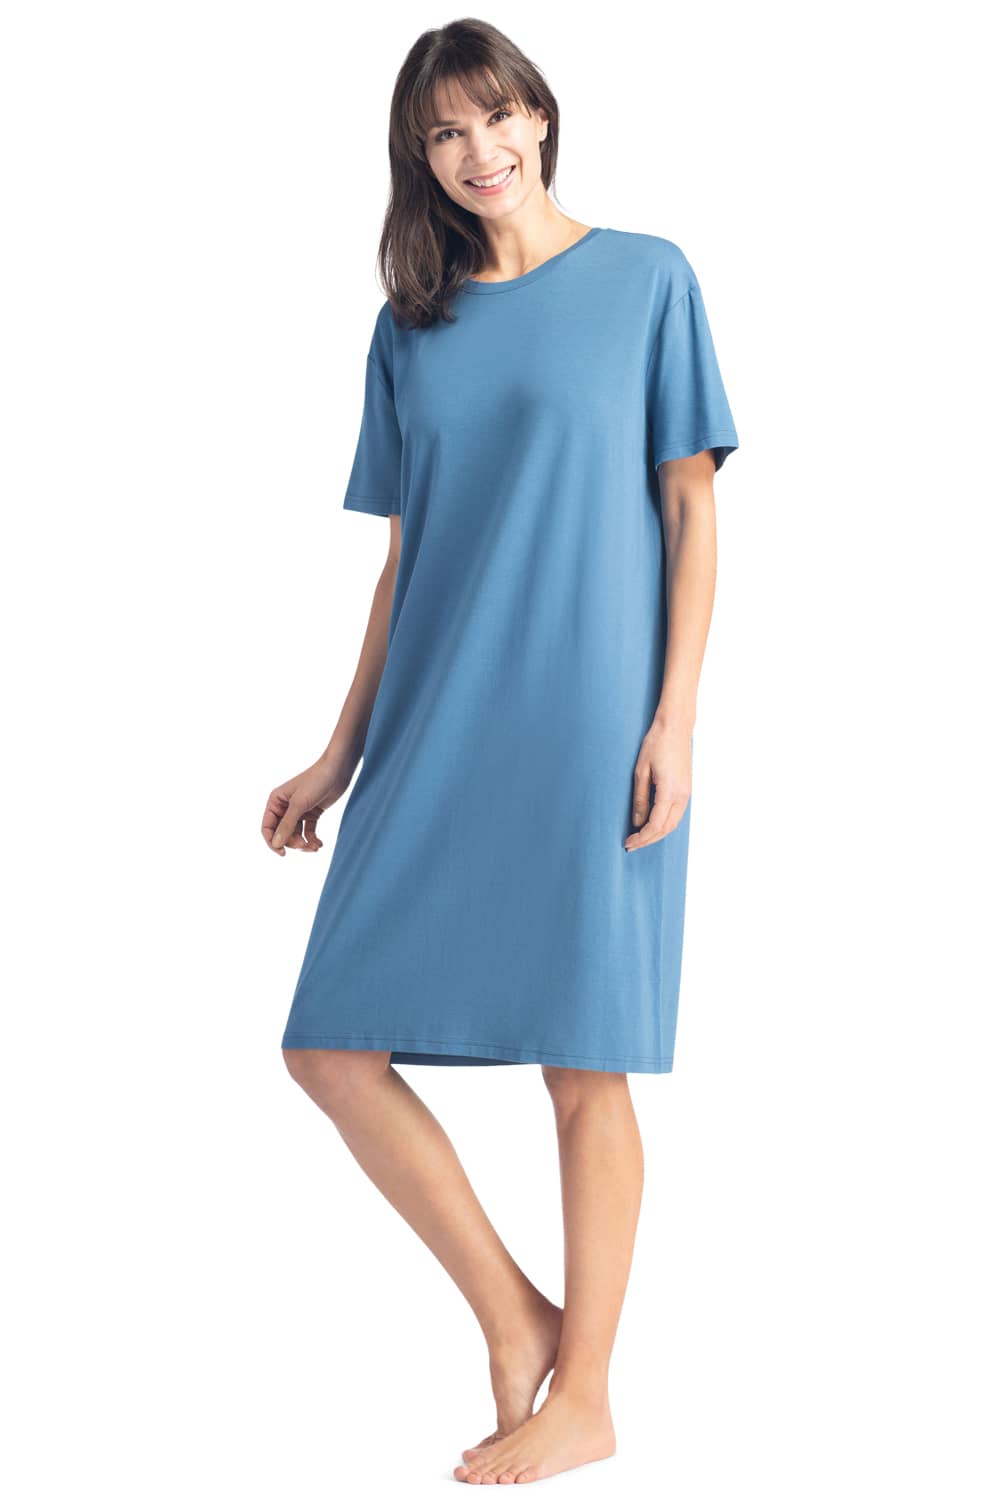 Women's Nightgown, Cotton Bamboo T Shirt Nightgown